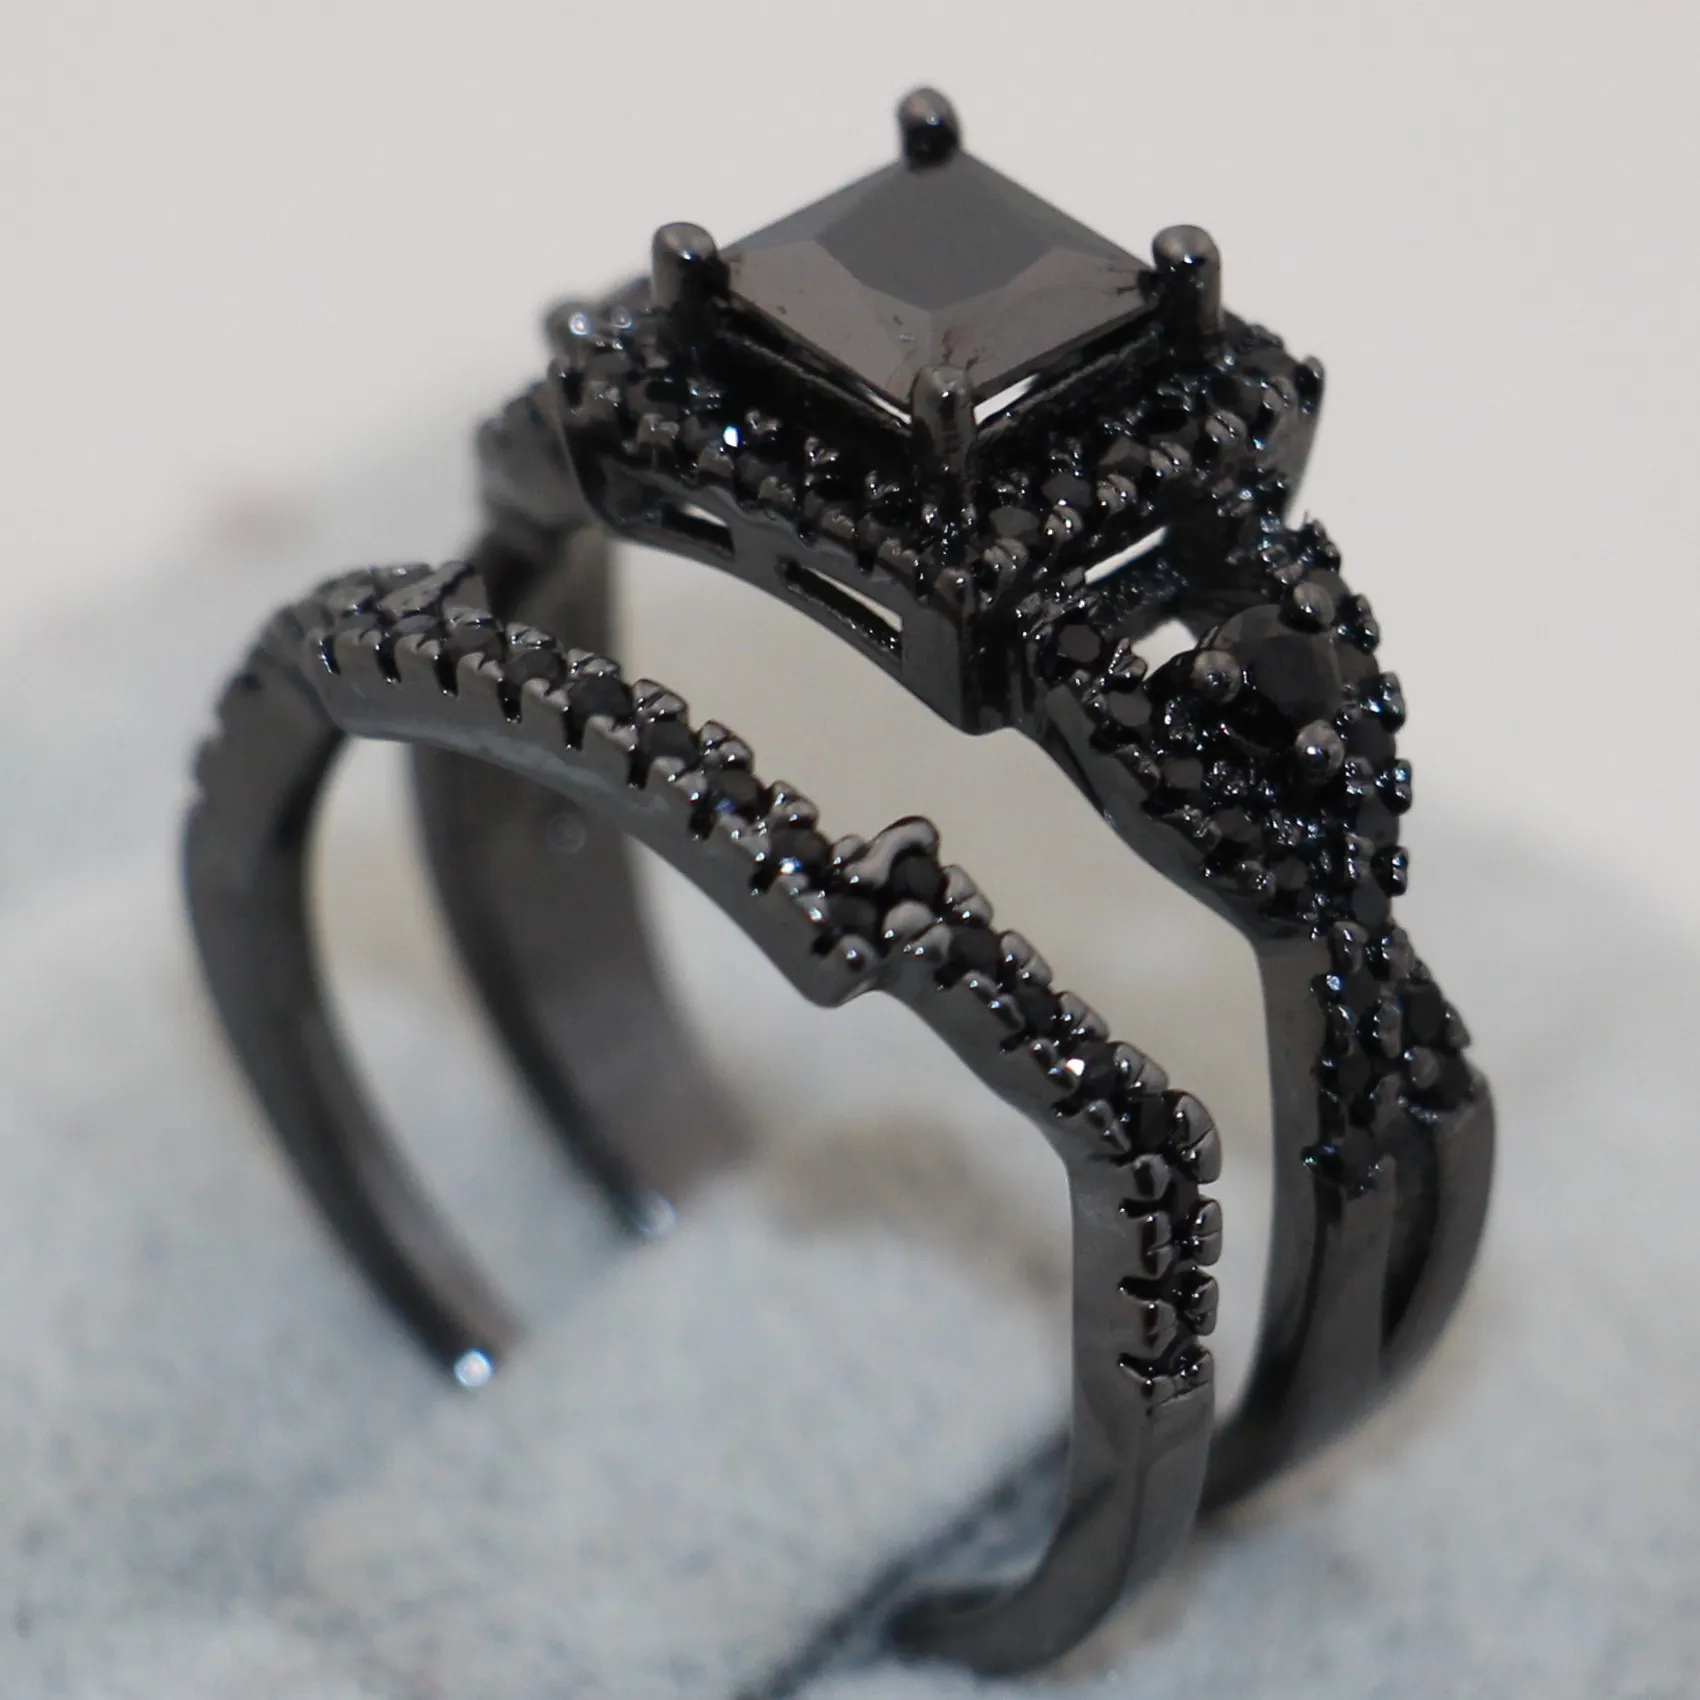 2016 مجموعات عصابة سوداء الزركون الأسود حلقات أزياء سيدة الاصبع المجوهرات تصميم جديدة للمرأة المشاركة الزفاف البنصر